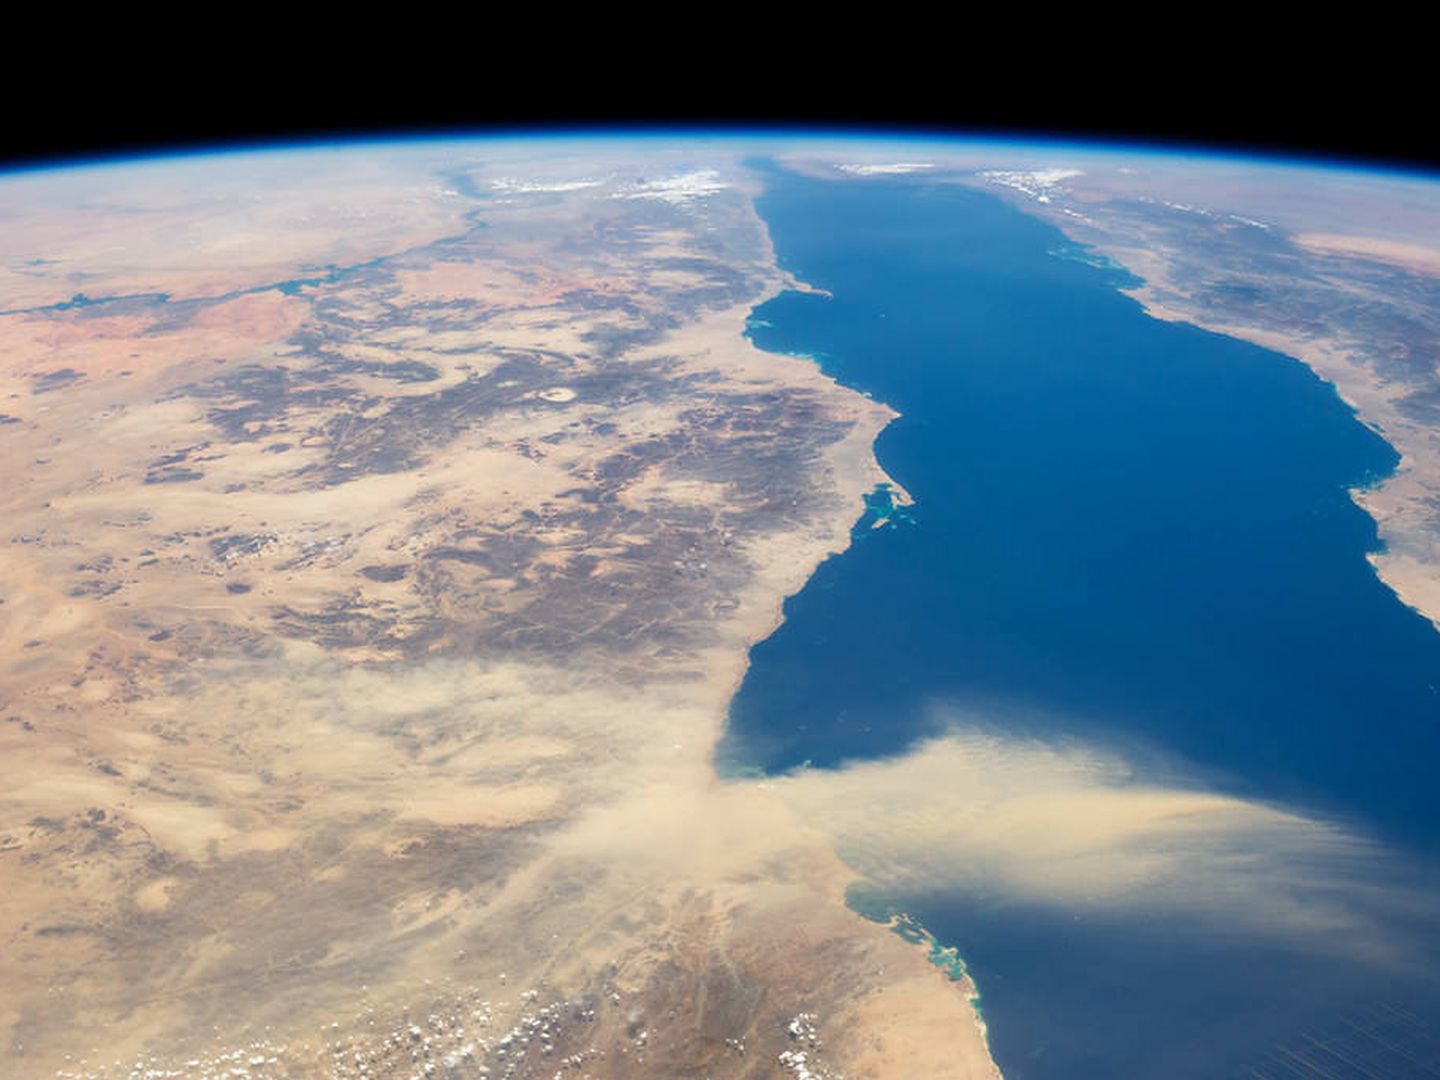 Imagen aérea del Mar Rojo. (Foto: NASA)